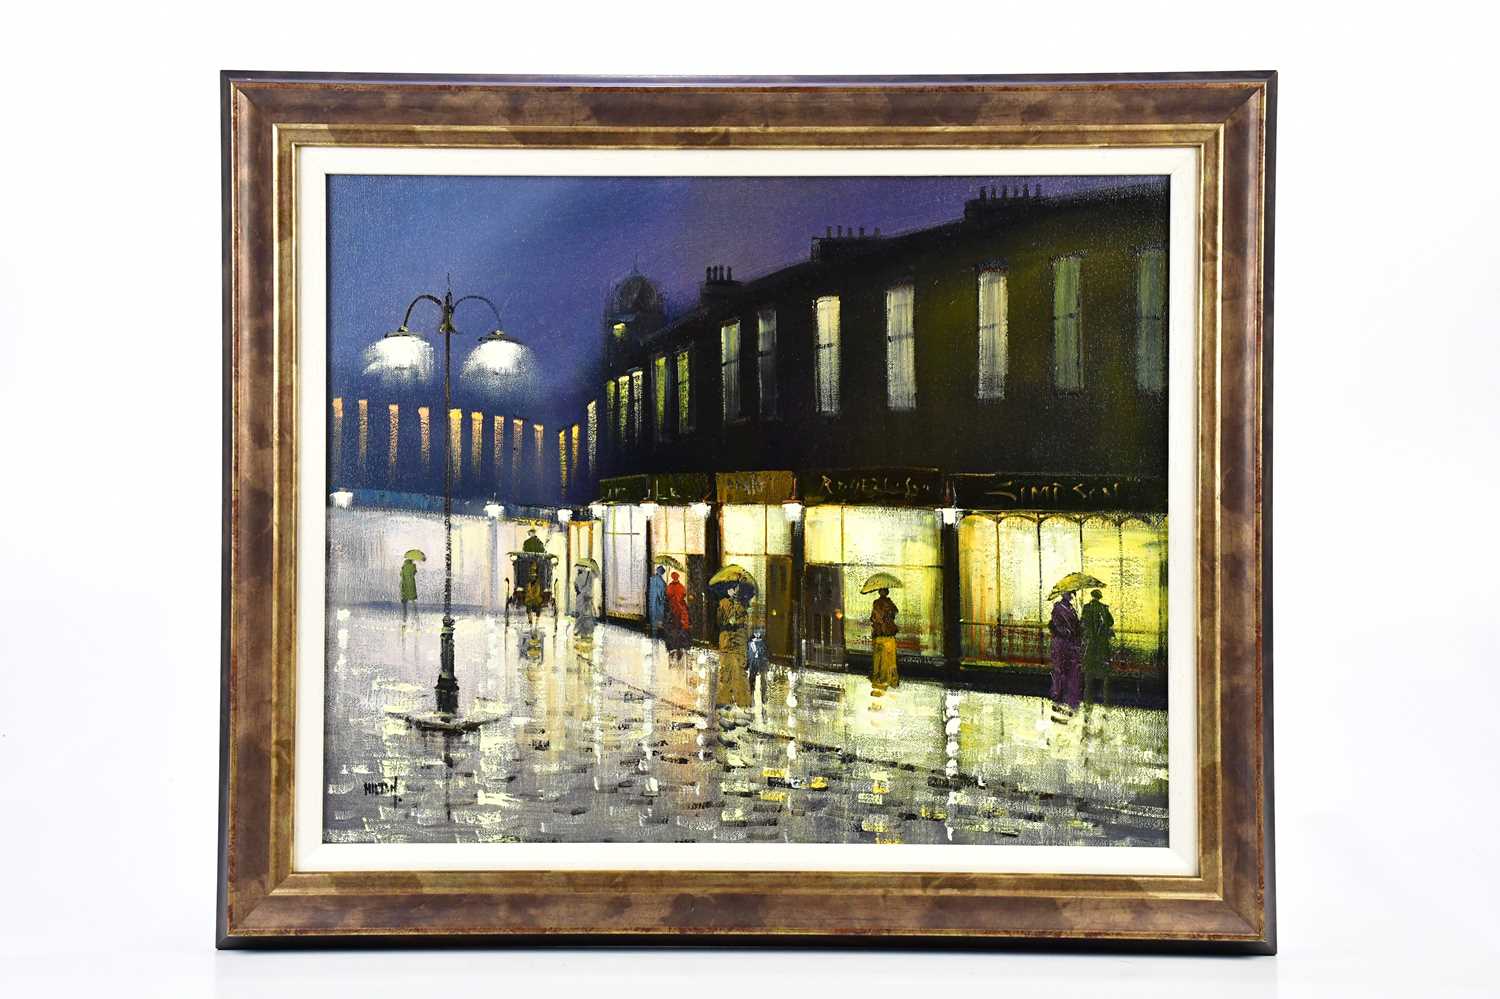 † BARRY HILTON; oil on canvas, street scene, signed lower left, 39 x 50cm, framed.